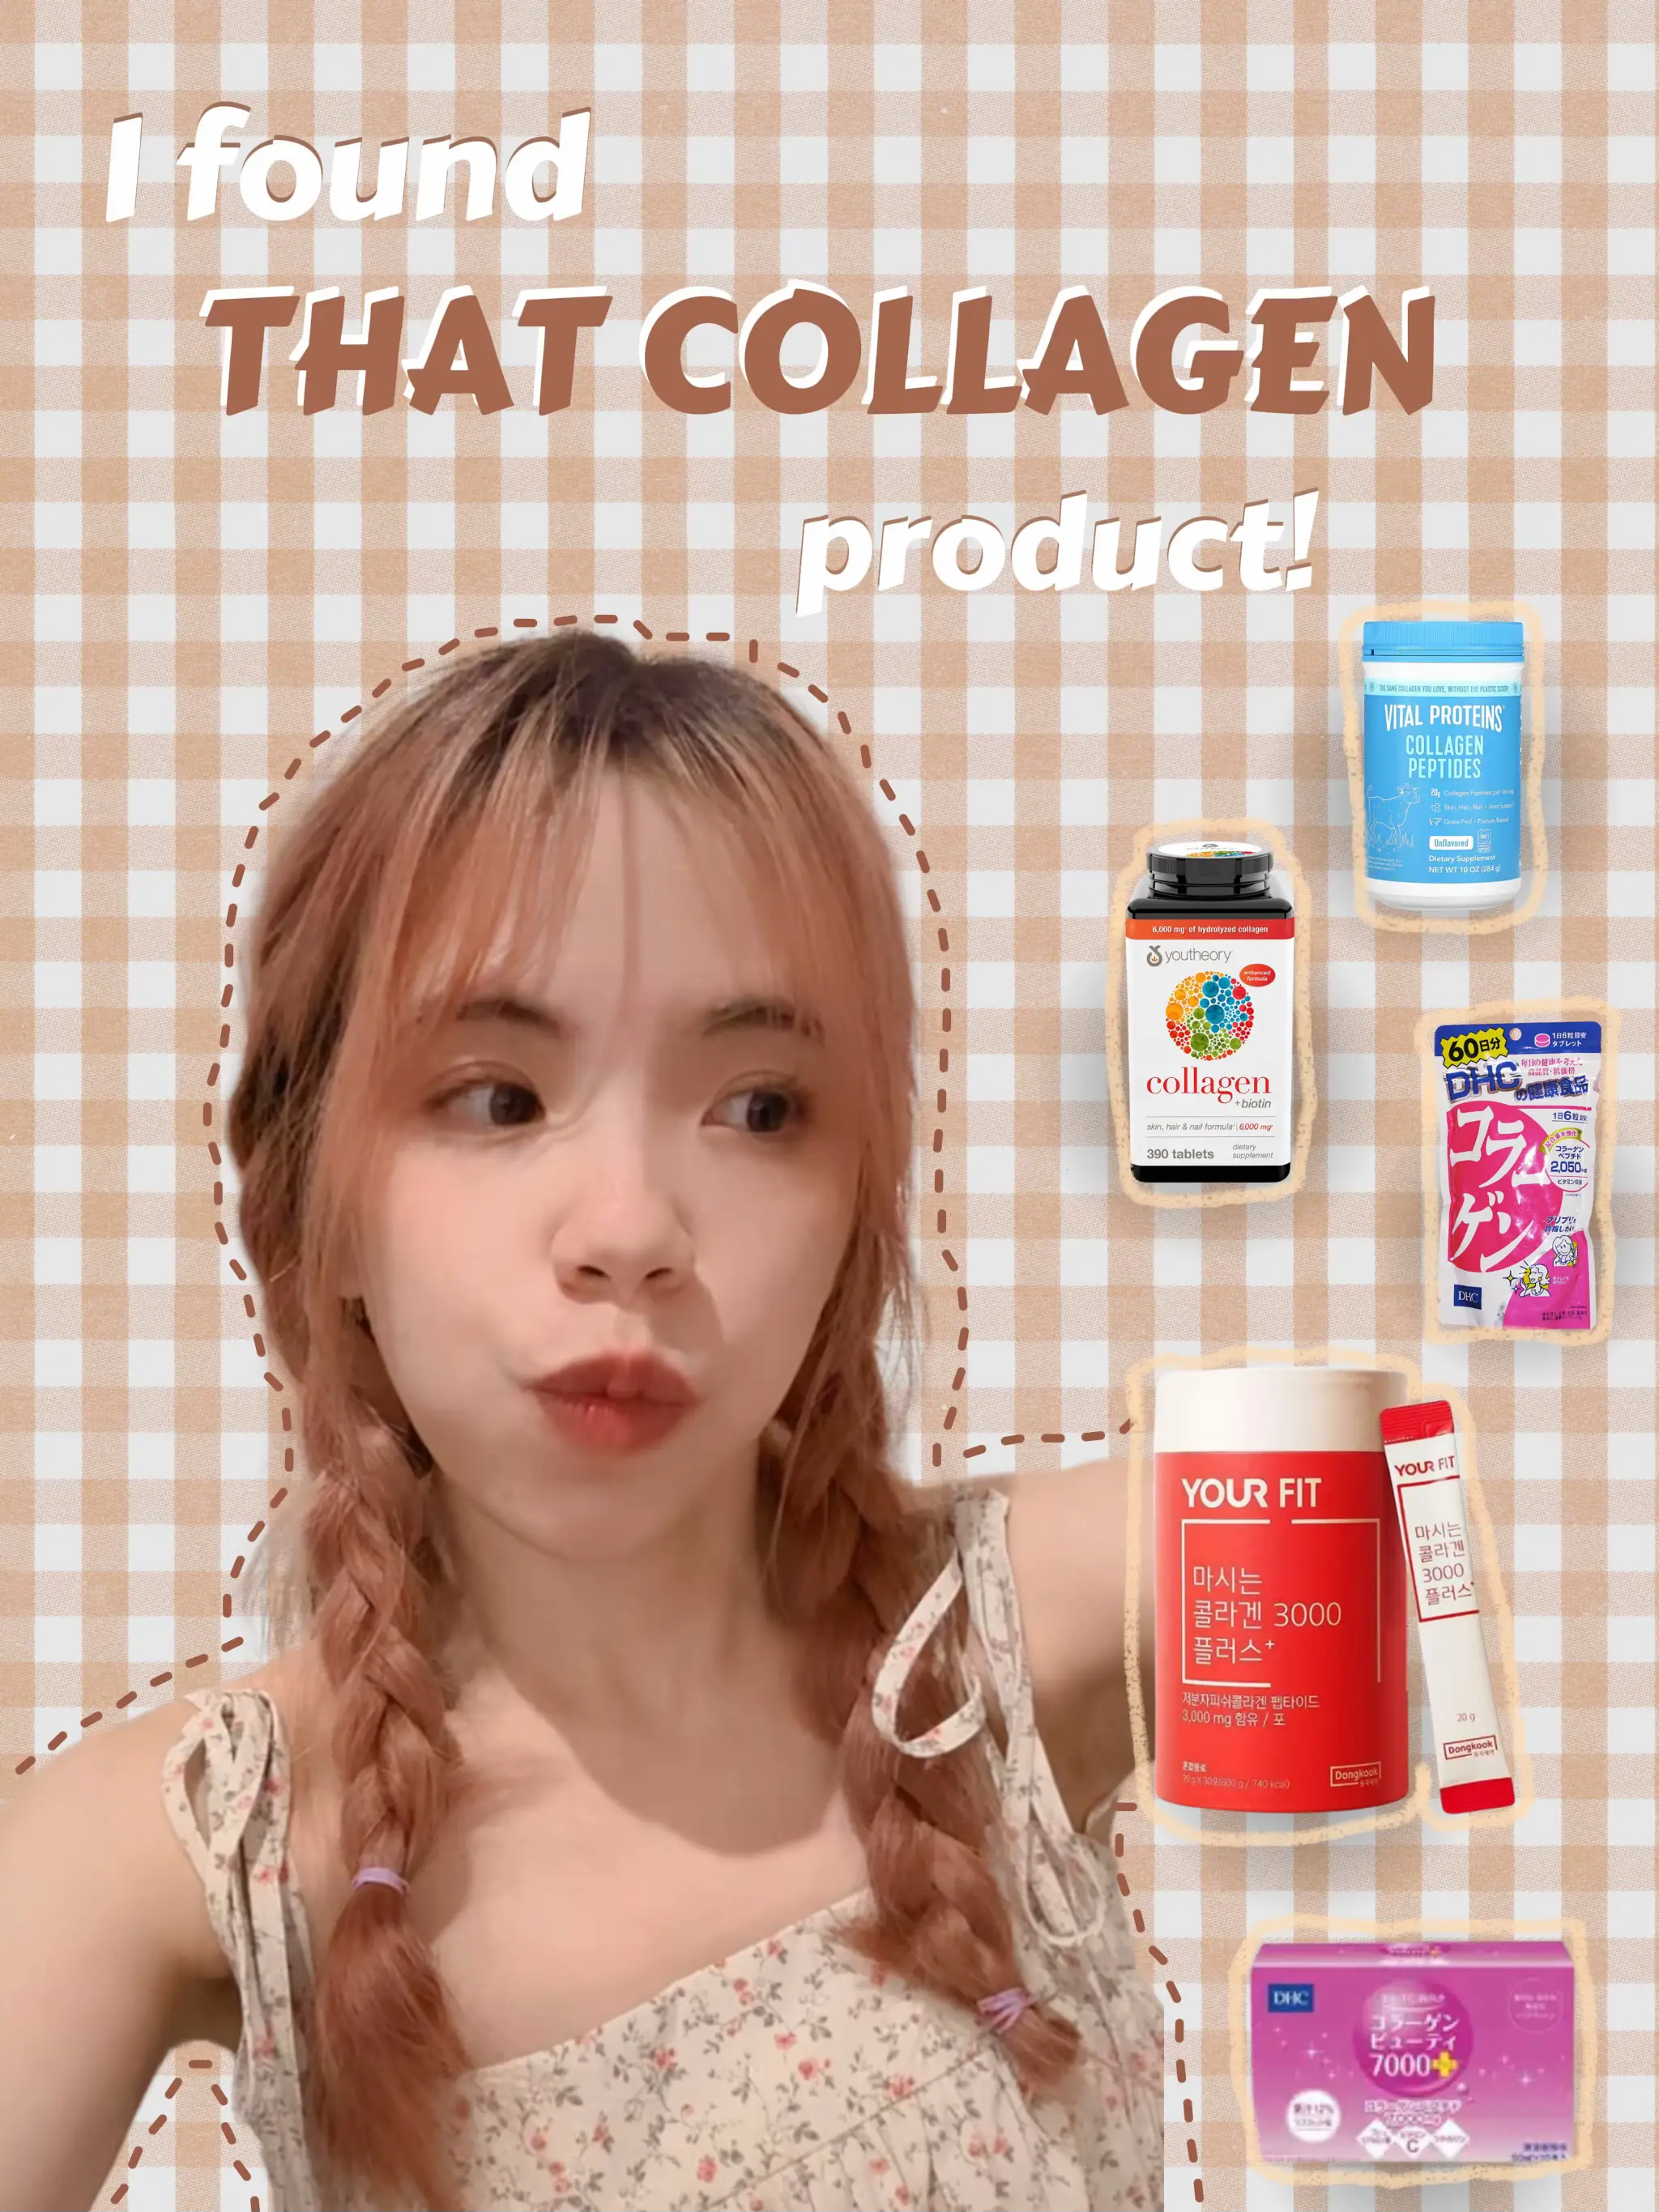 collagen powder - Lemon8 Search